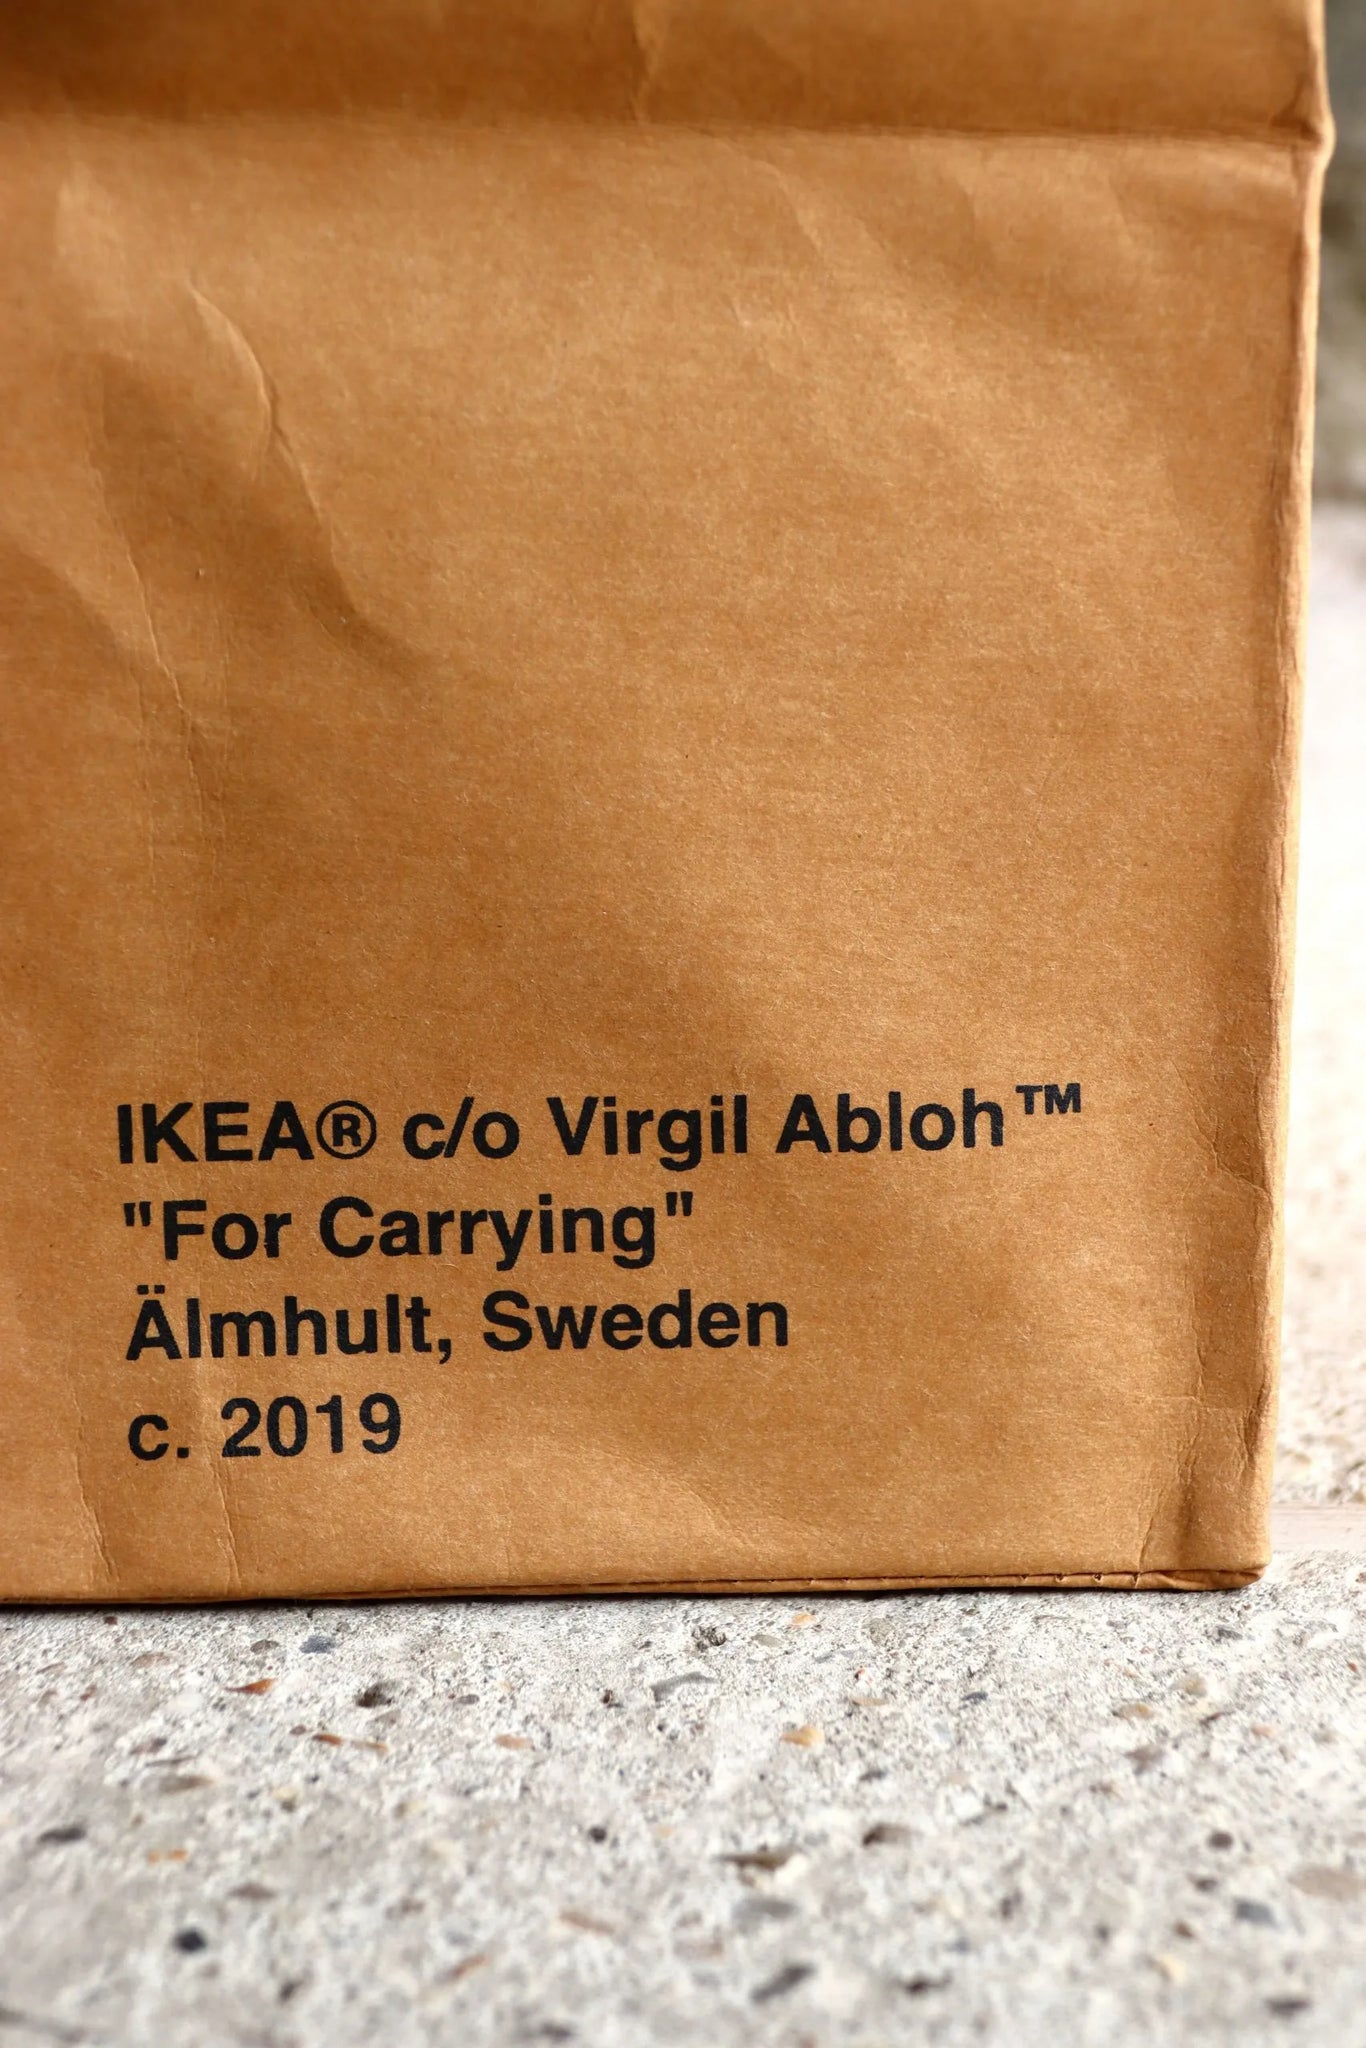 Virgil Abloh x IKEA MARKERAD Large Bag – Designstoresyd